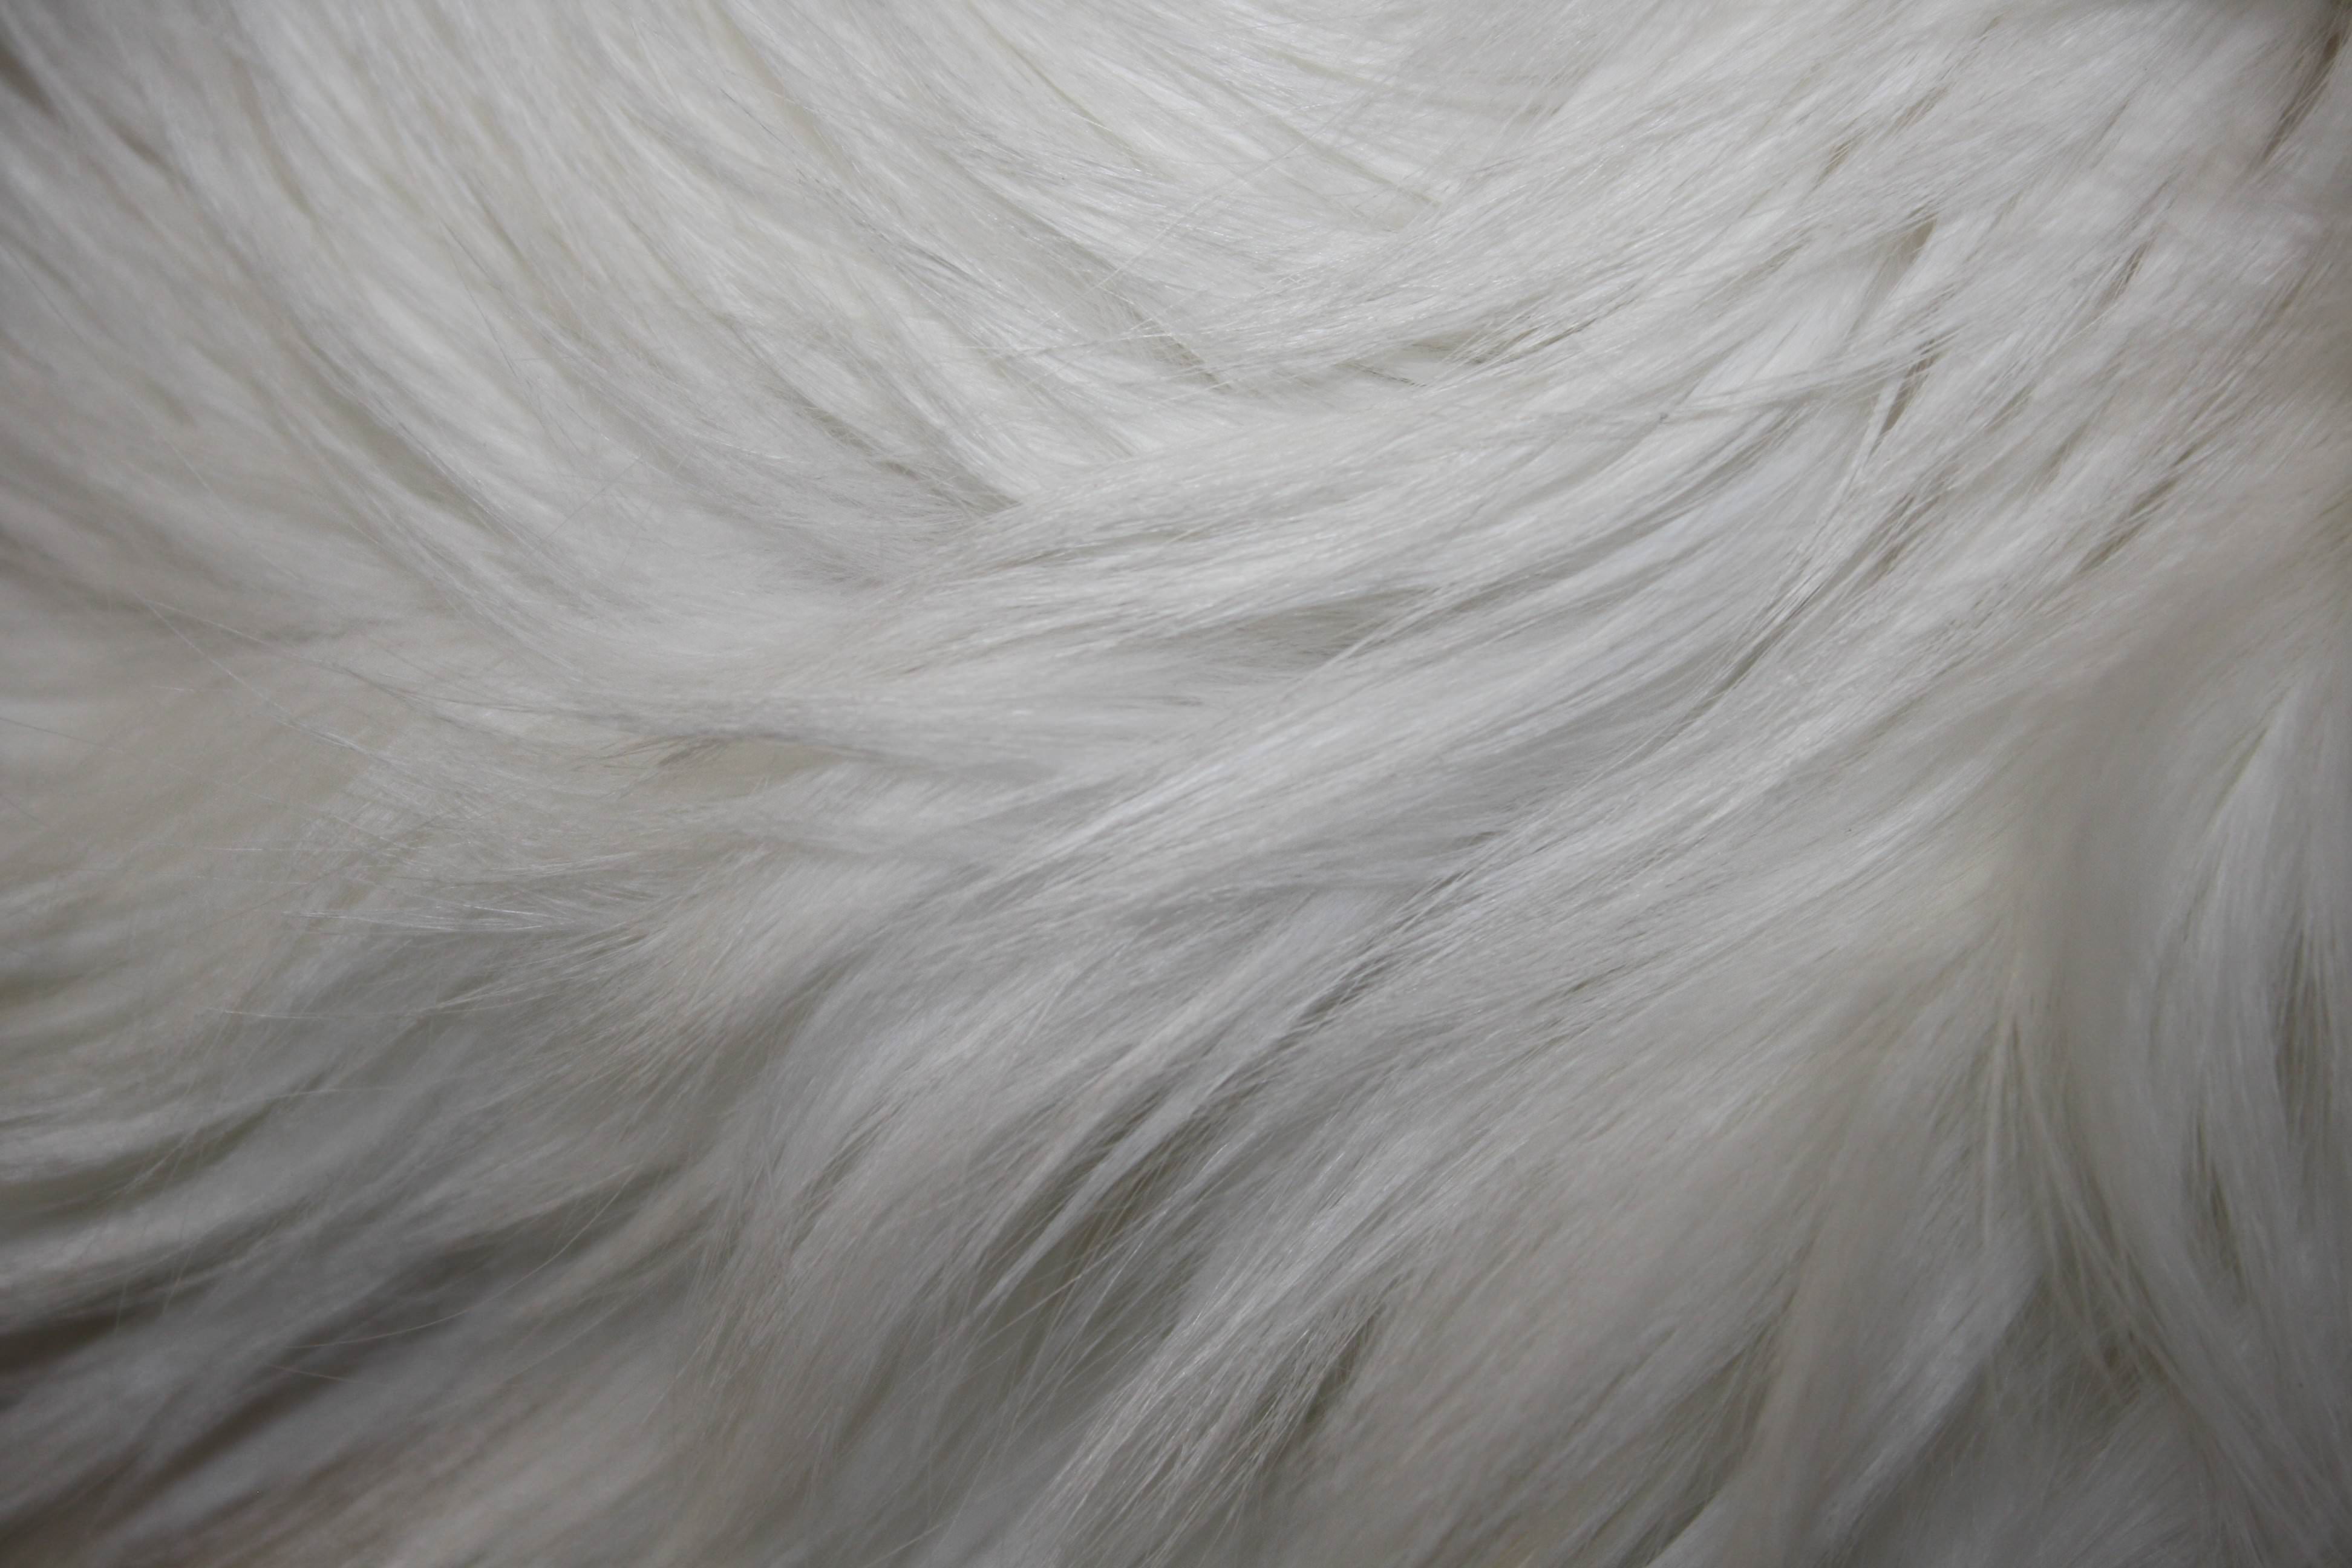 white fur texture